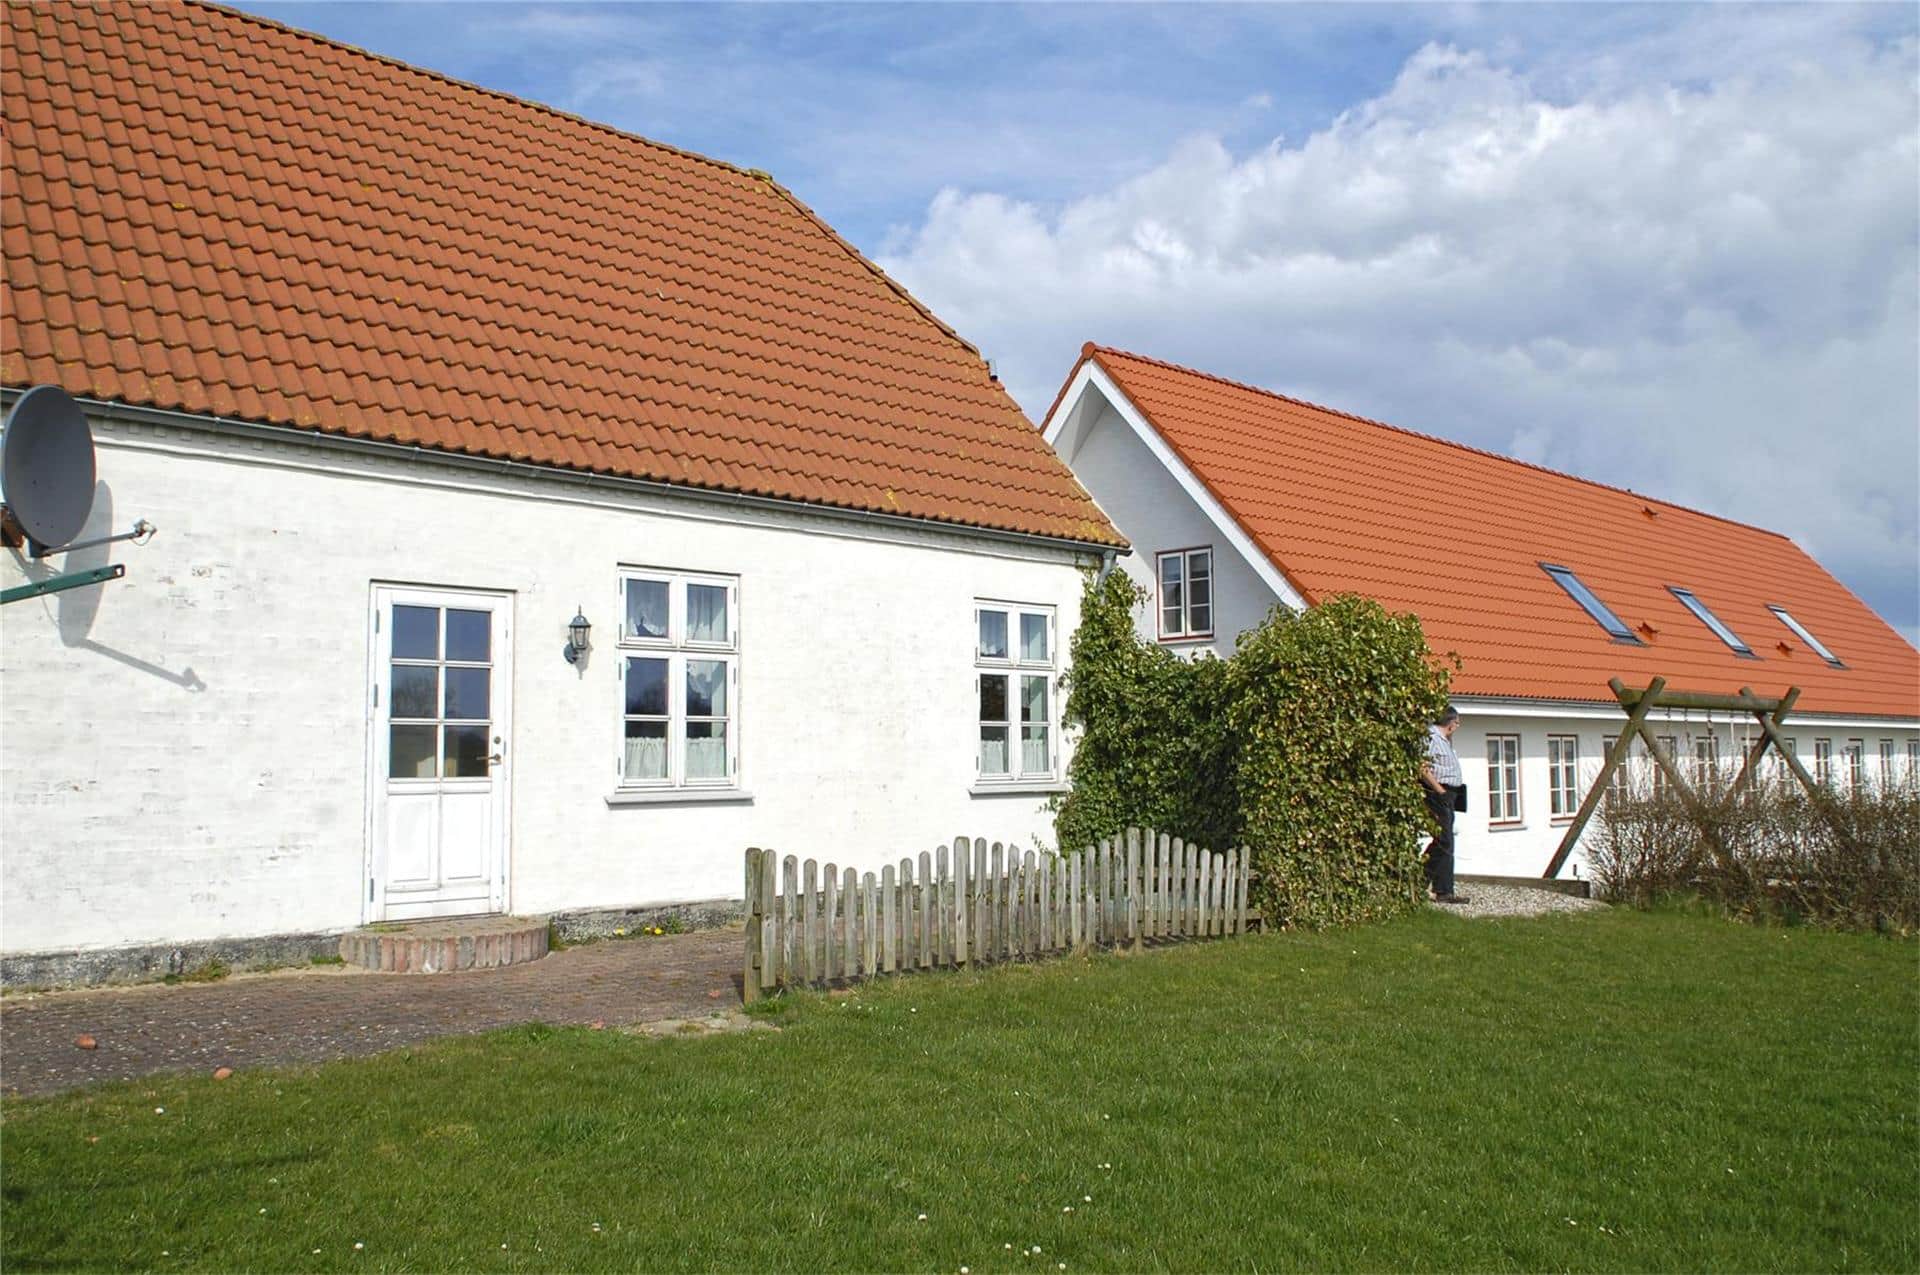 Image 2-3 Holiday-home F503601, Basmosevej 6, DK - 6430 Nordborg